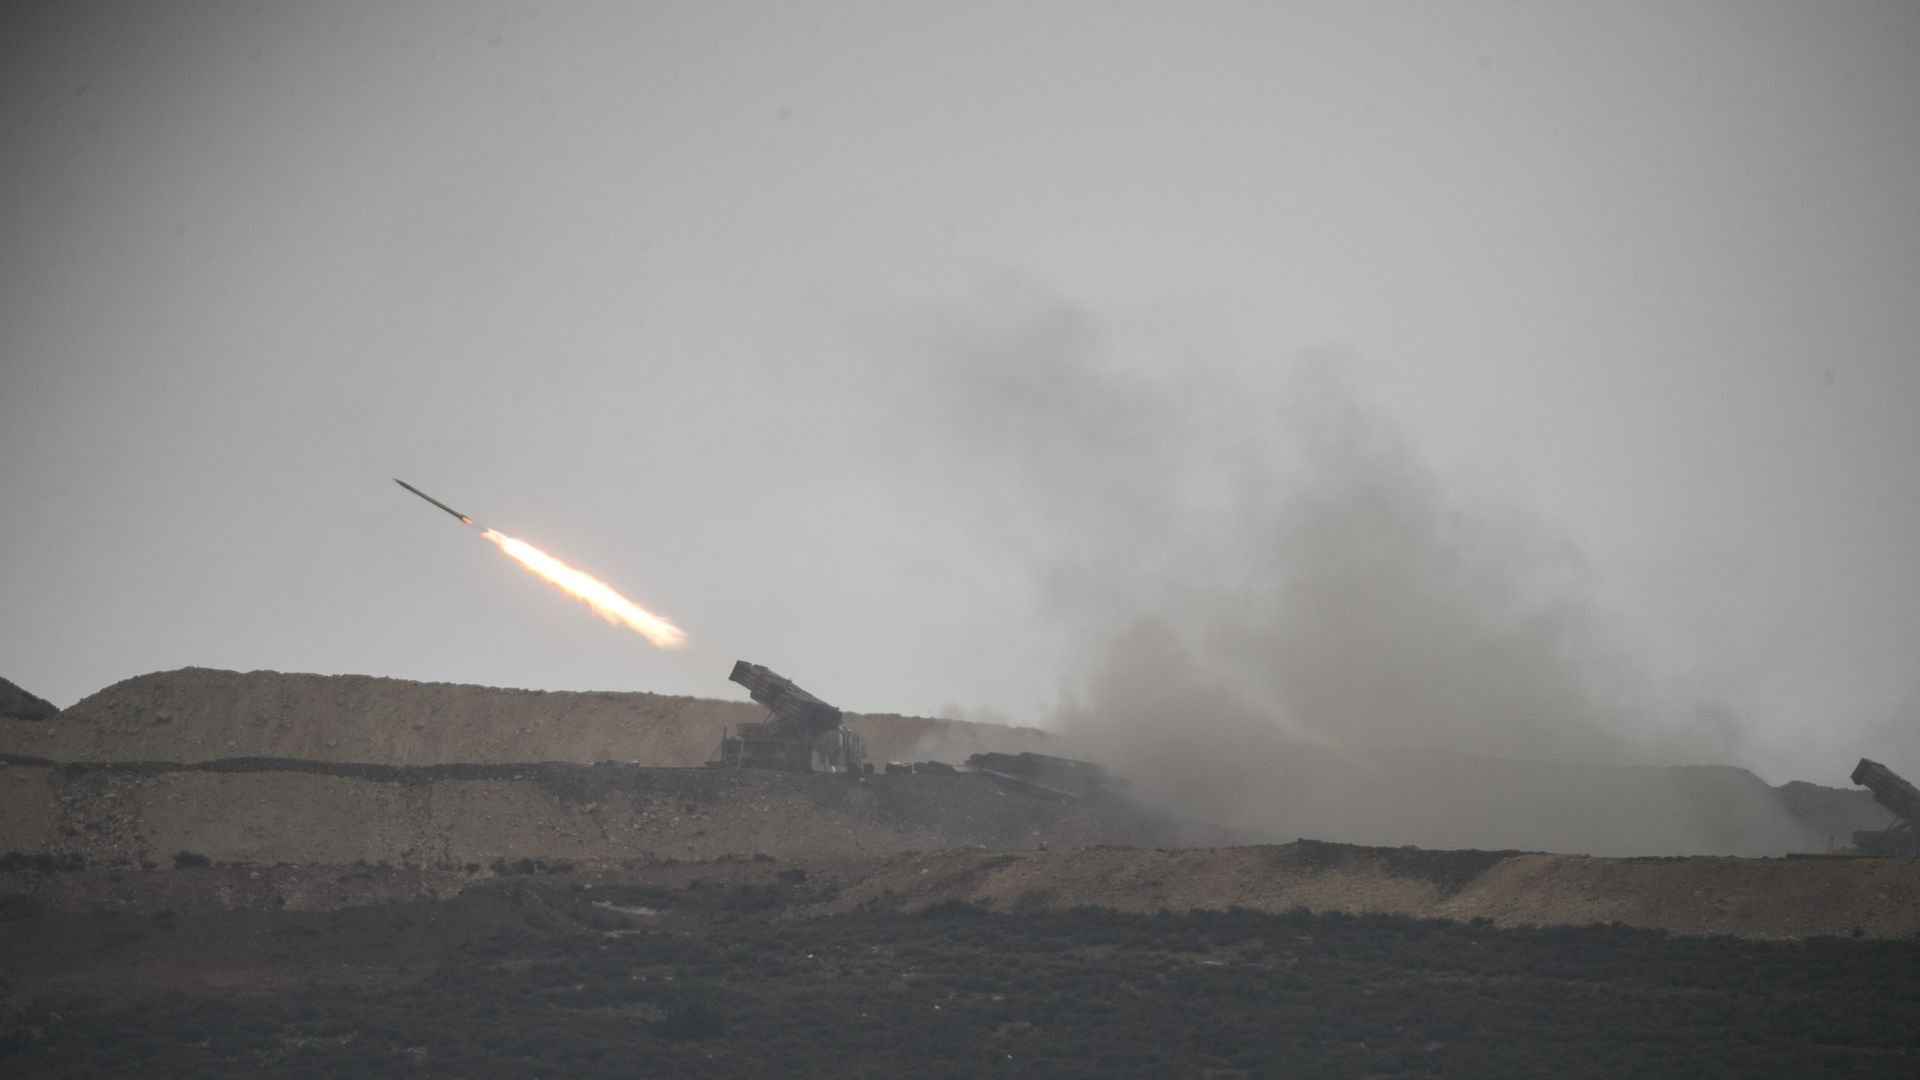 Turkish howitzer firing